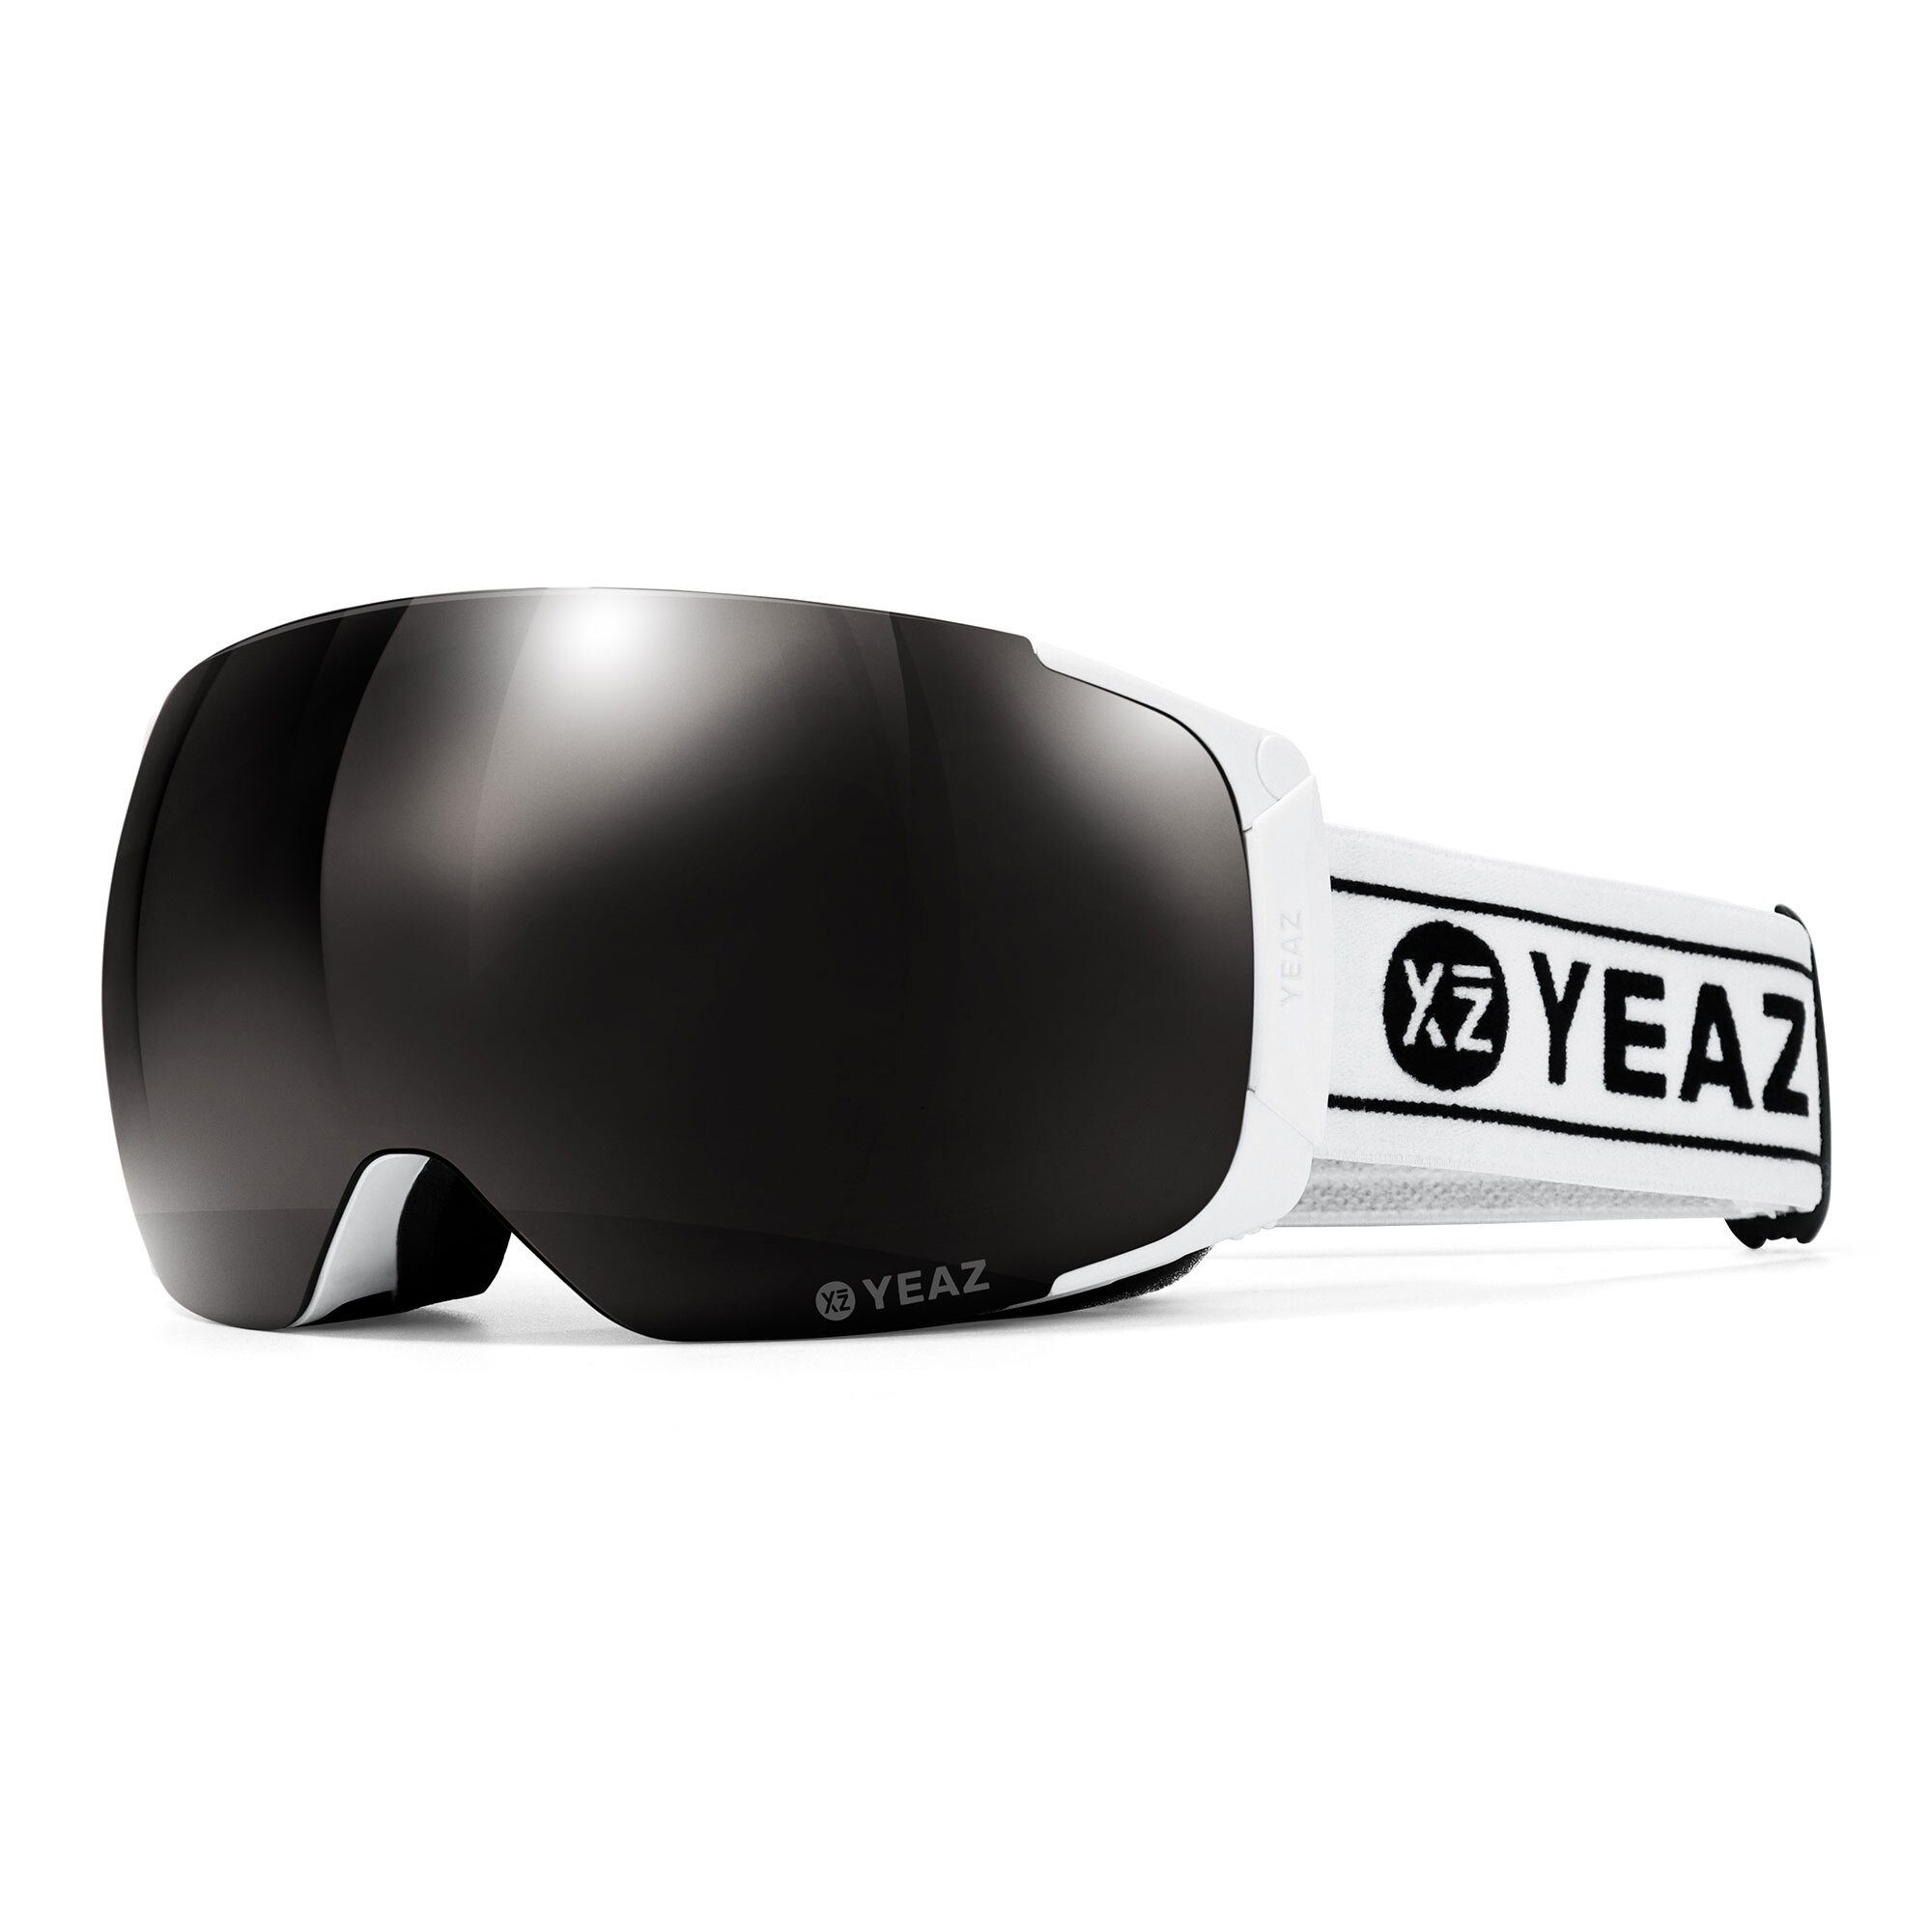 YEAZ Skibrille und TWEAK-X Anti-Bruch-System ski- snowboard-brille, Premium-Ski- Jugendliche, Snowboardbrille für Erwachsene und und hohe und Kratzfestigkeit